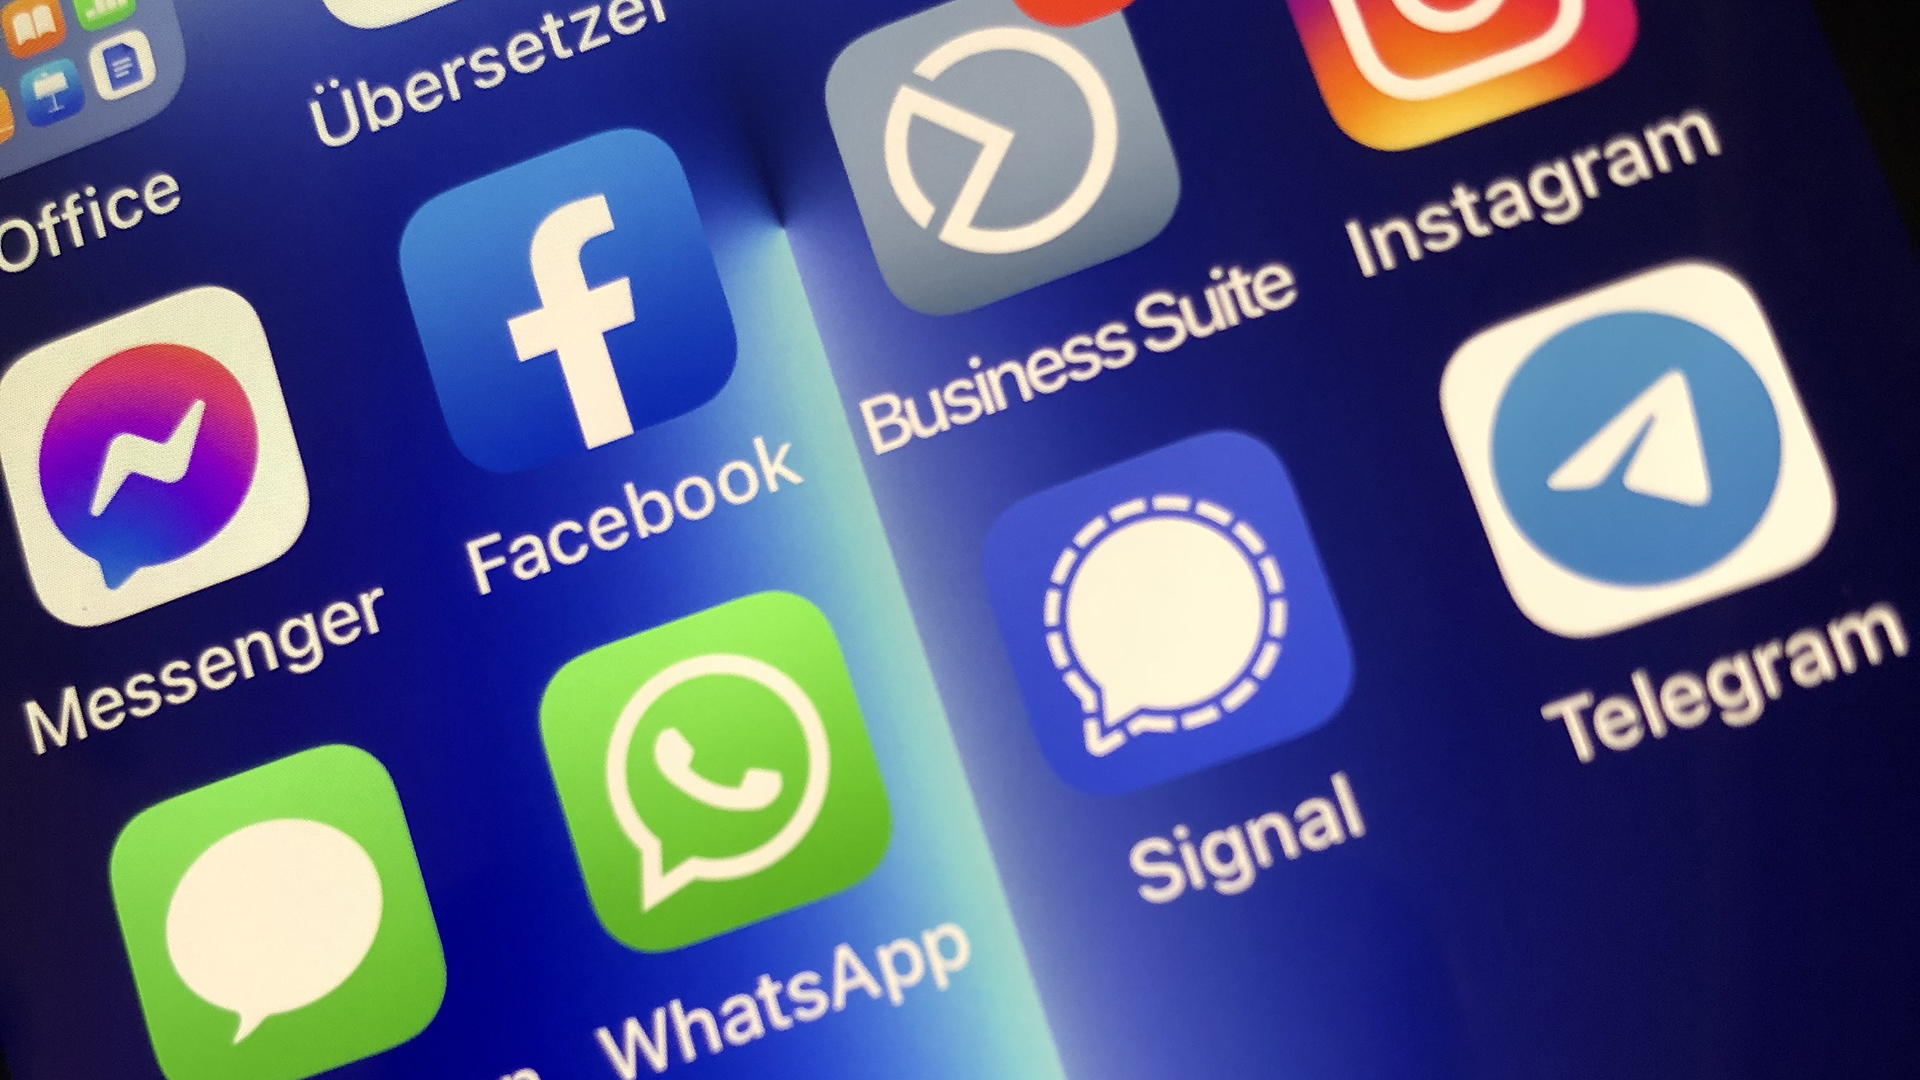 Auf einem Smartphonedisplay sind mehrere Apps wie Instagram, facebook, Telegram, WhatsApp zu sehen.